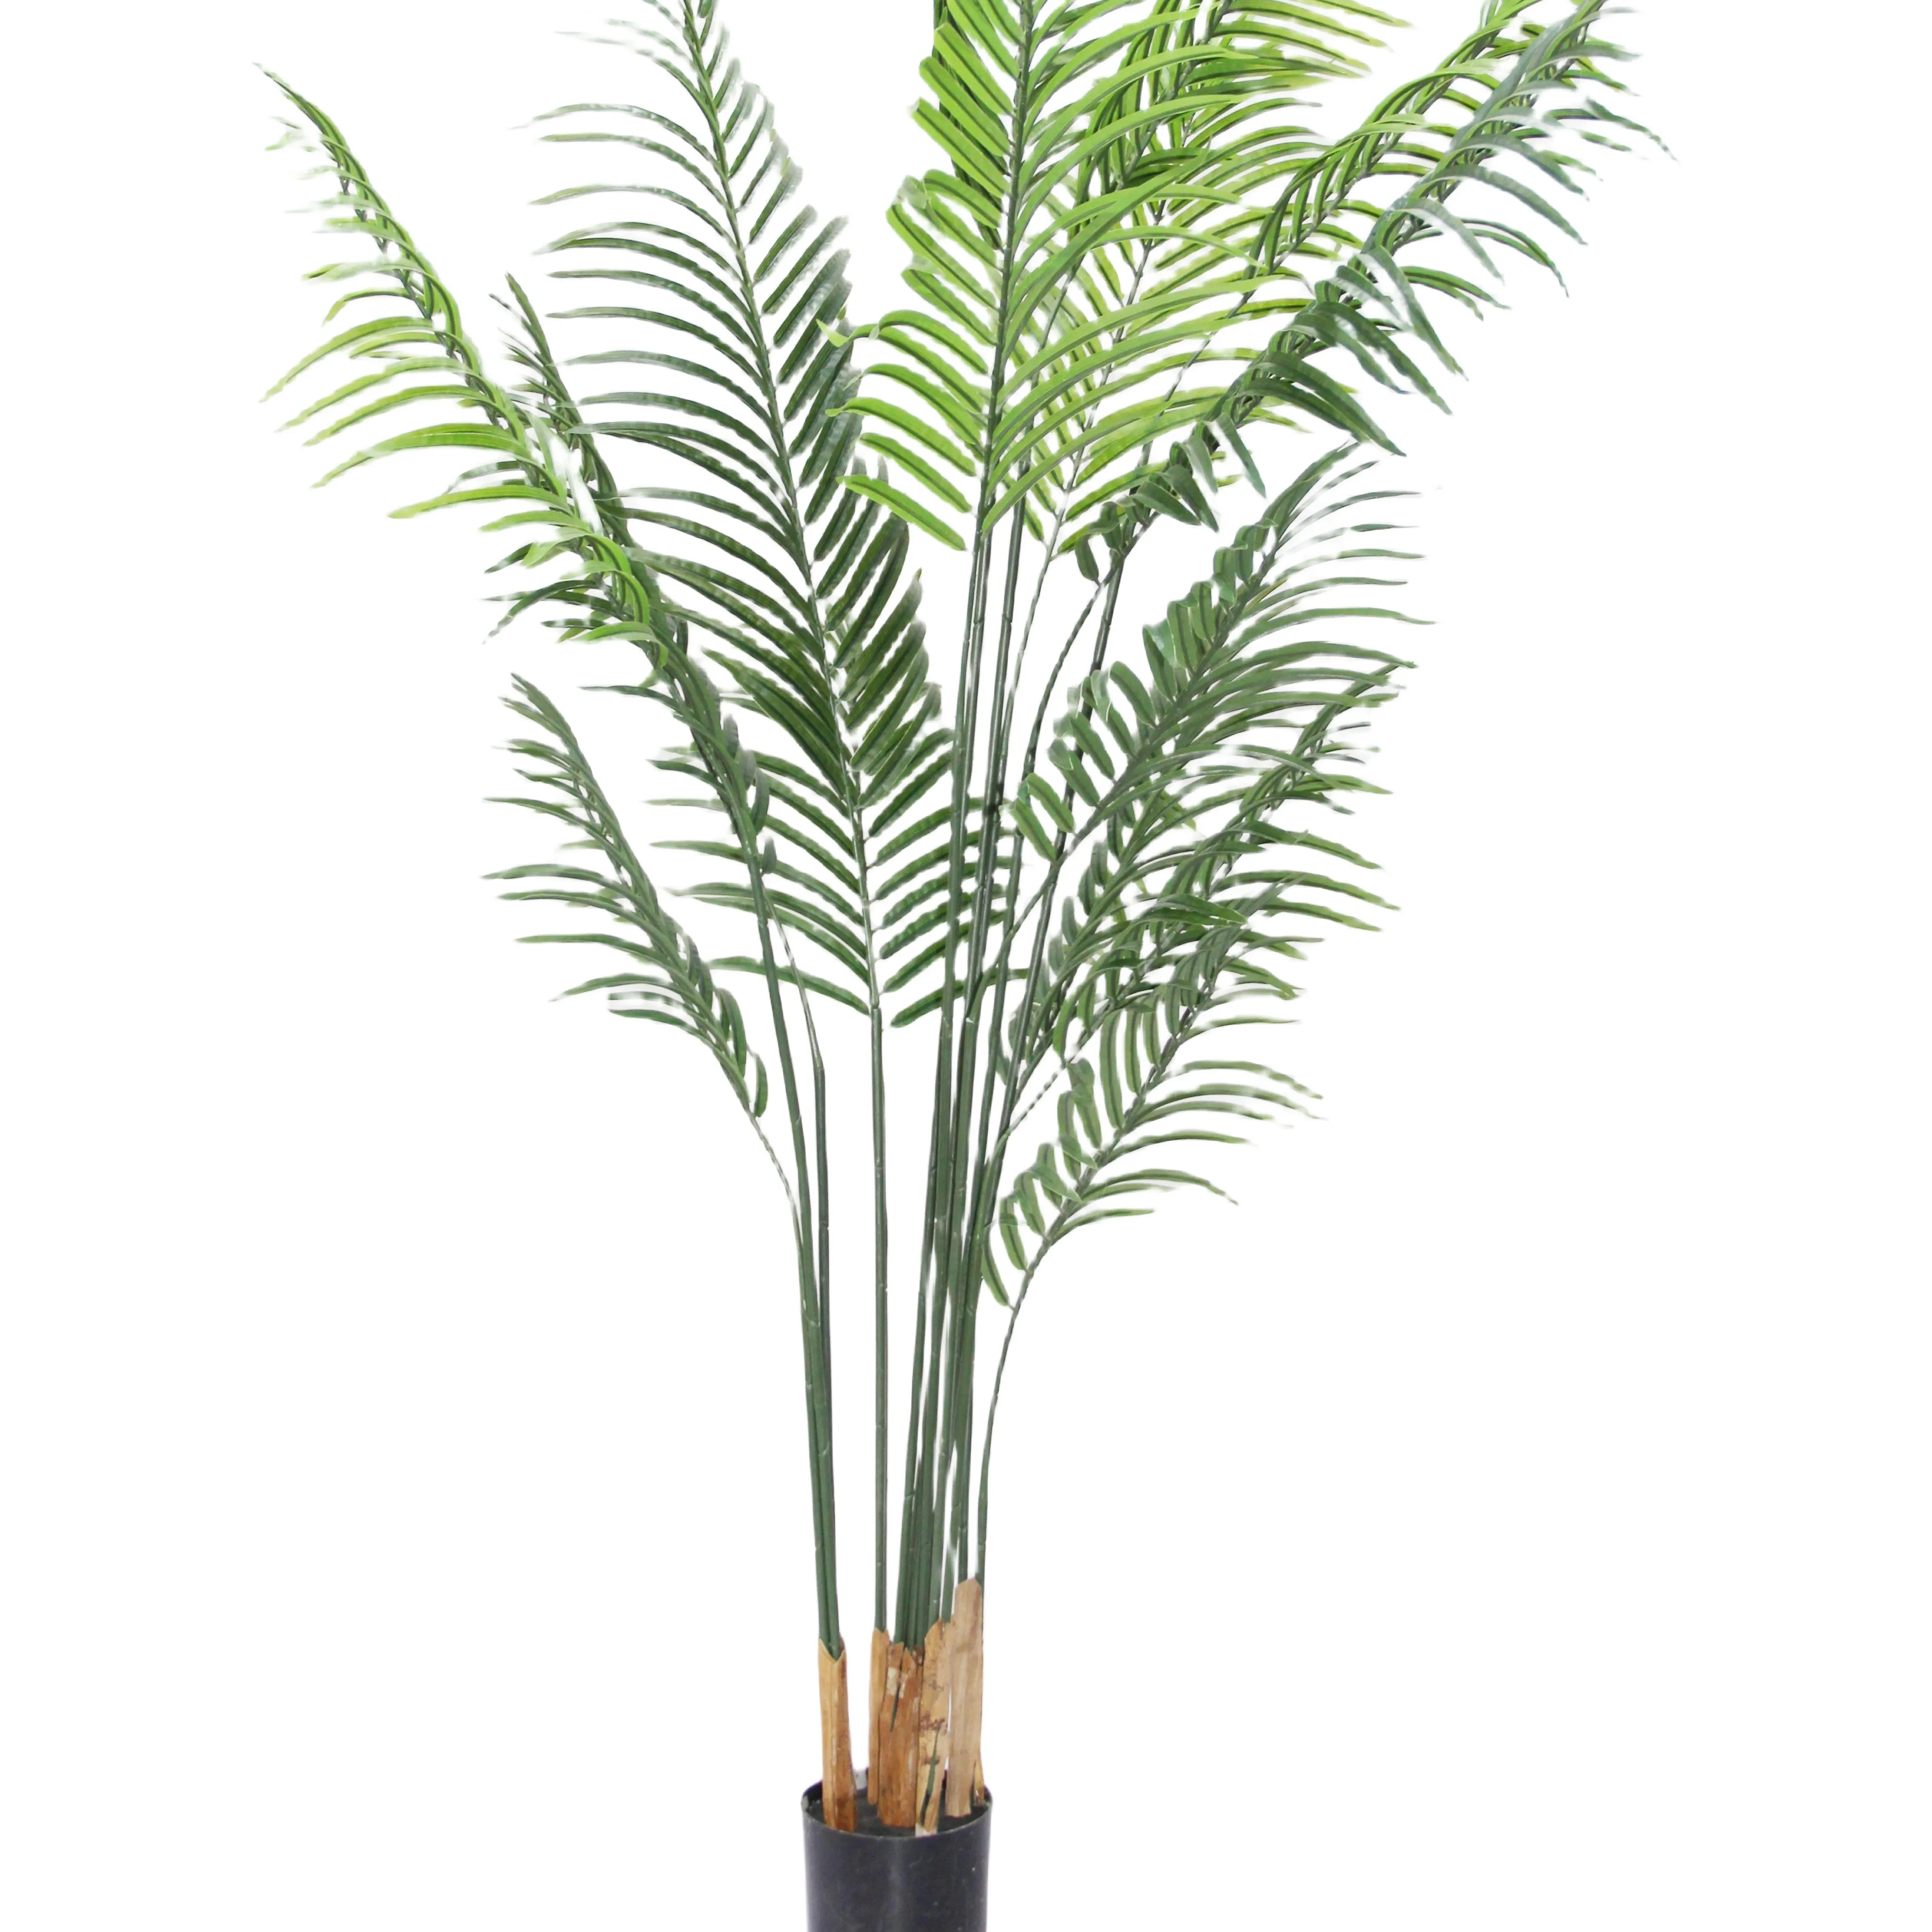 Образец искусственного зеленого пластика для украшения дома или наружного пальмового дерева, изготовленного из прочного полиэтиленового материала